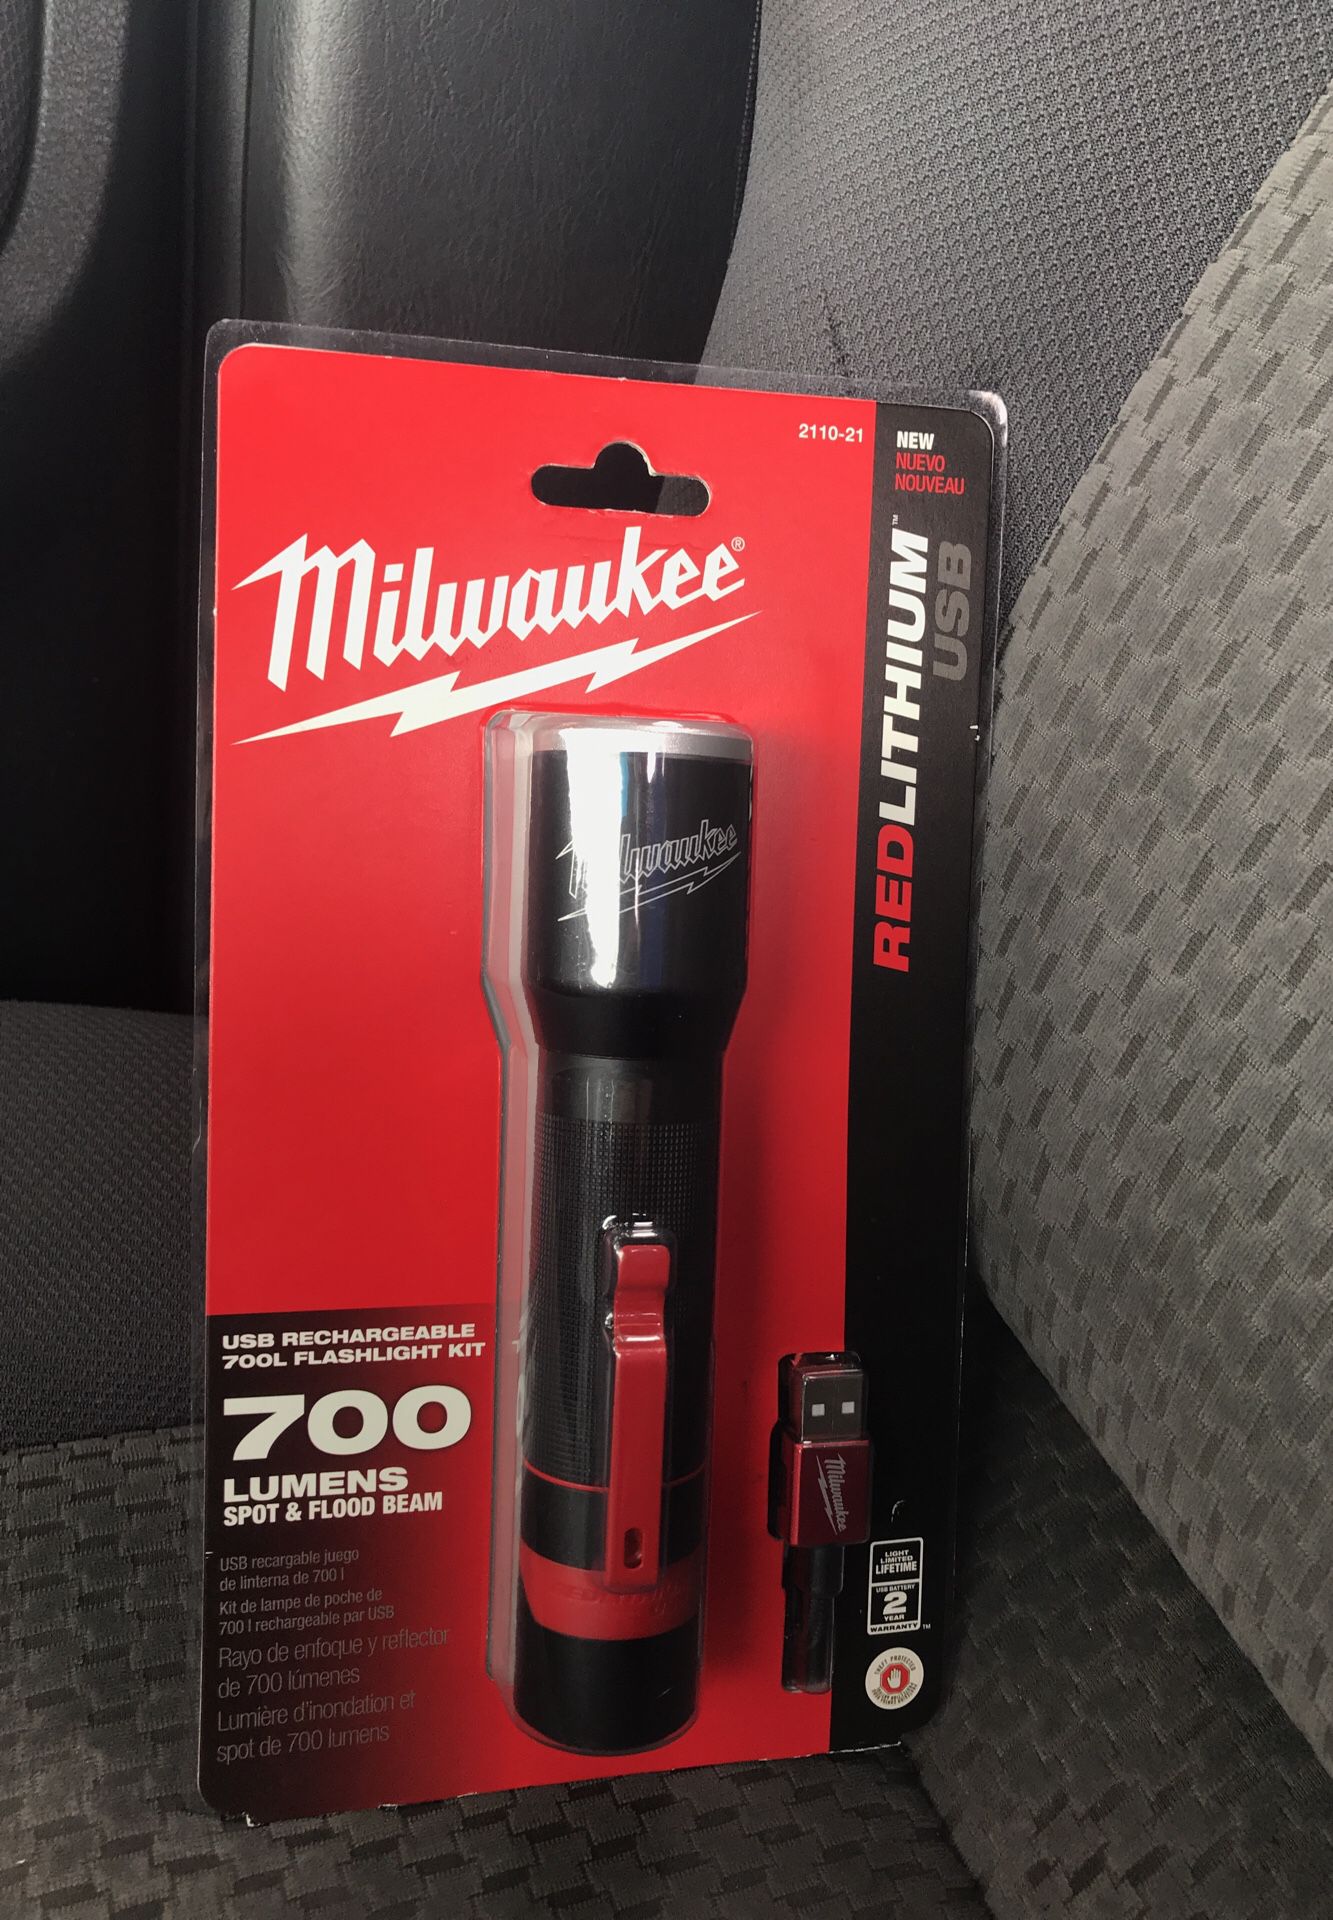 2110-21 / Lampe de poche rechargeable USB 700L Milwaukee